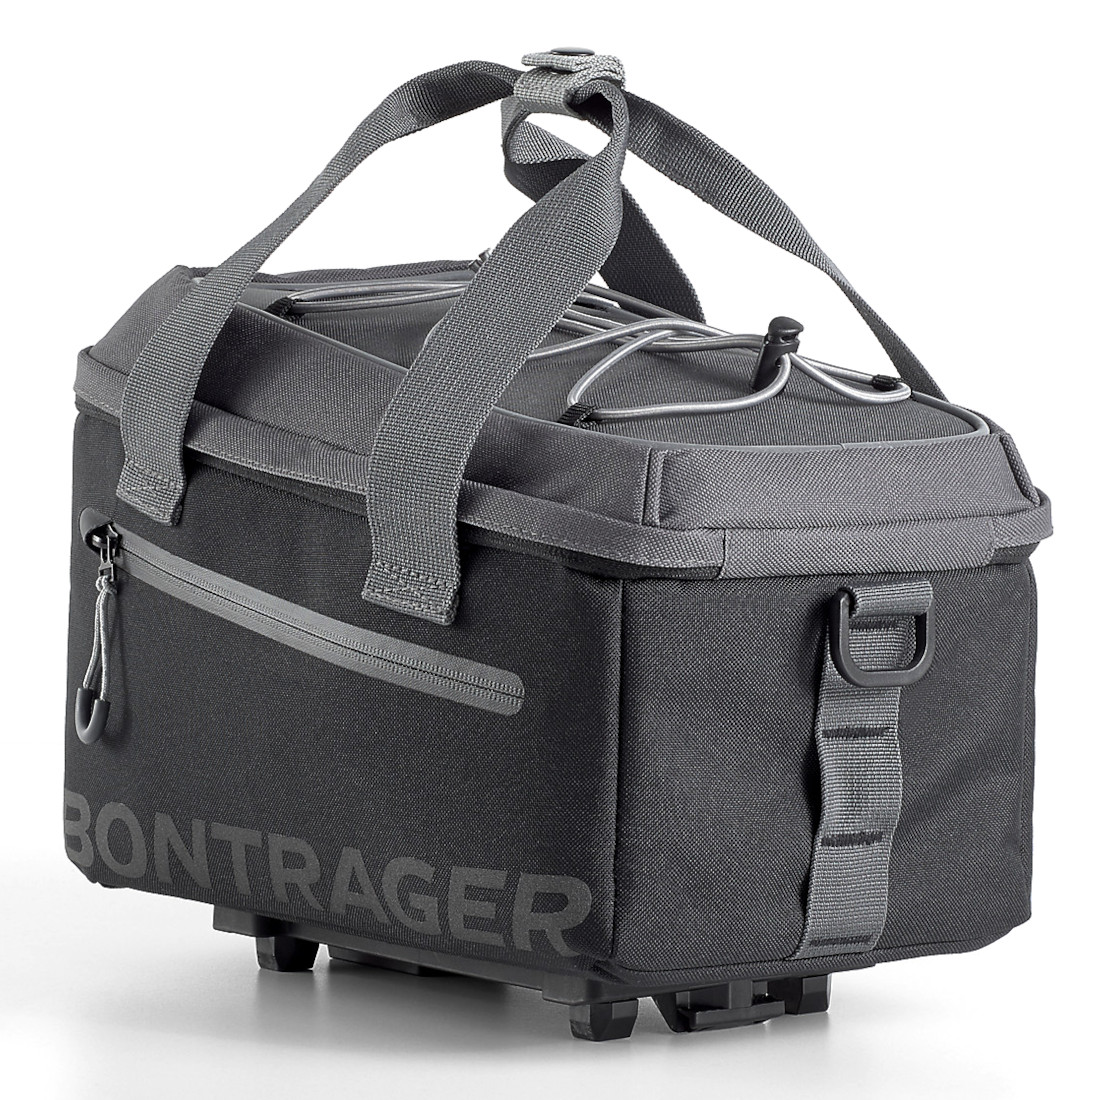 Image of Bontrager MIK Commuter Rear Trunk Bag - 7L